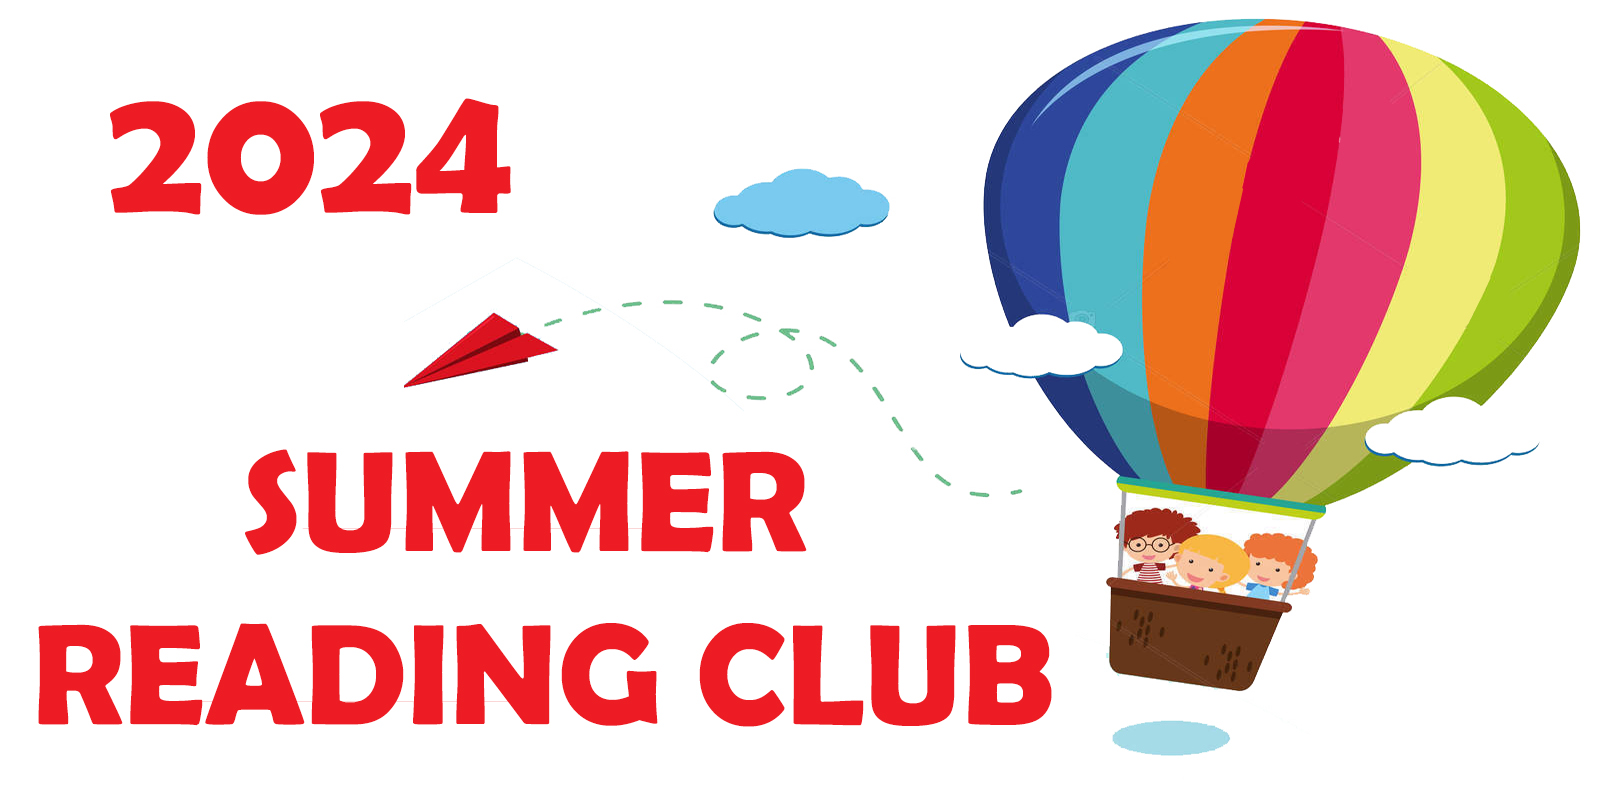 2024 summer reading club